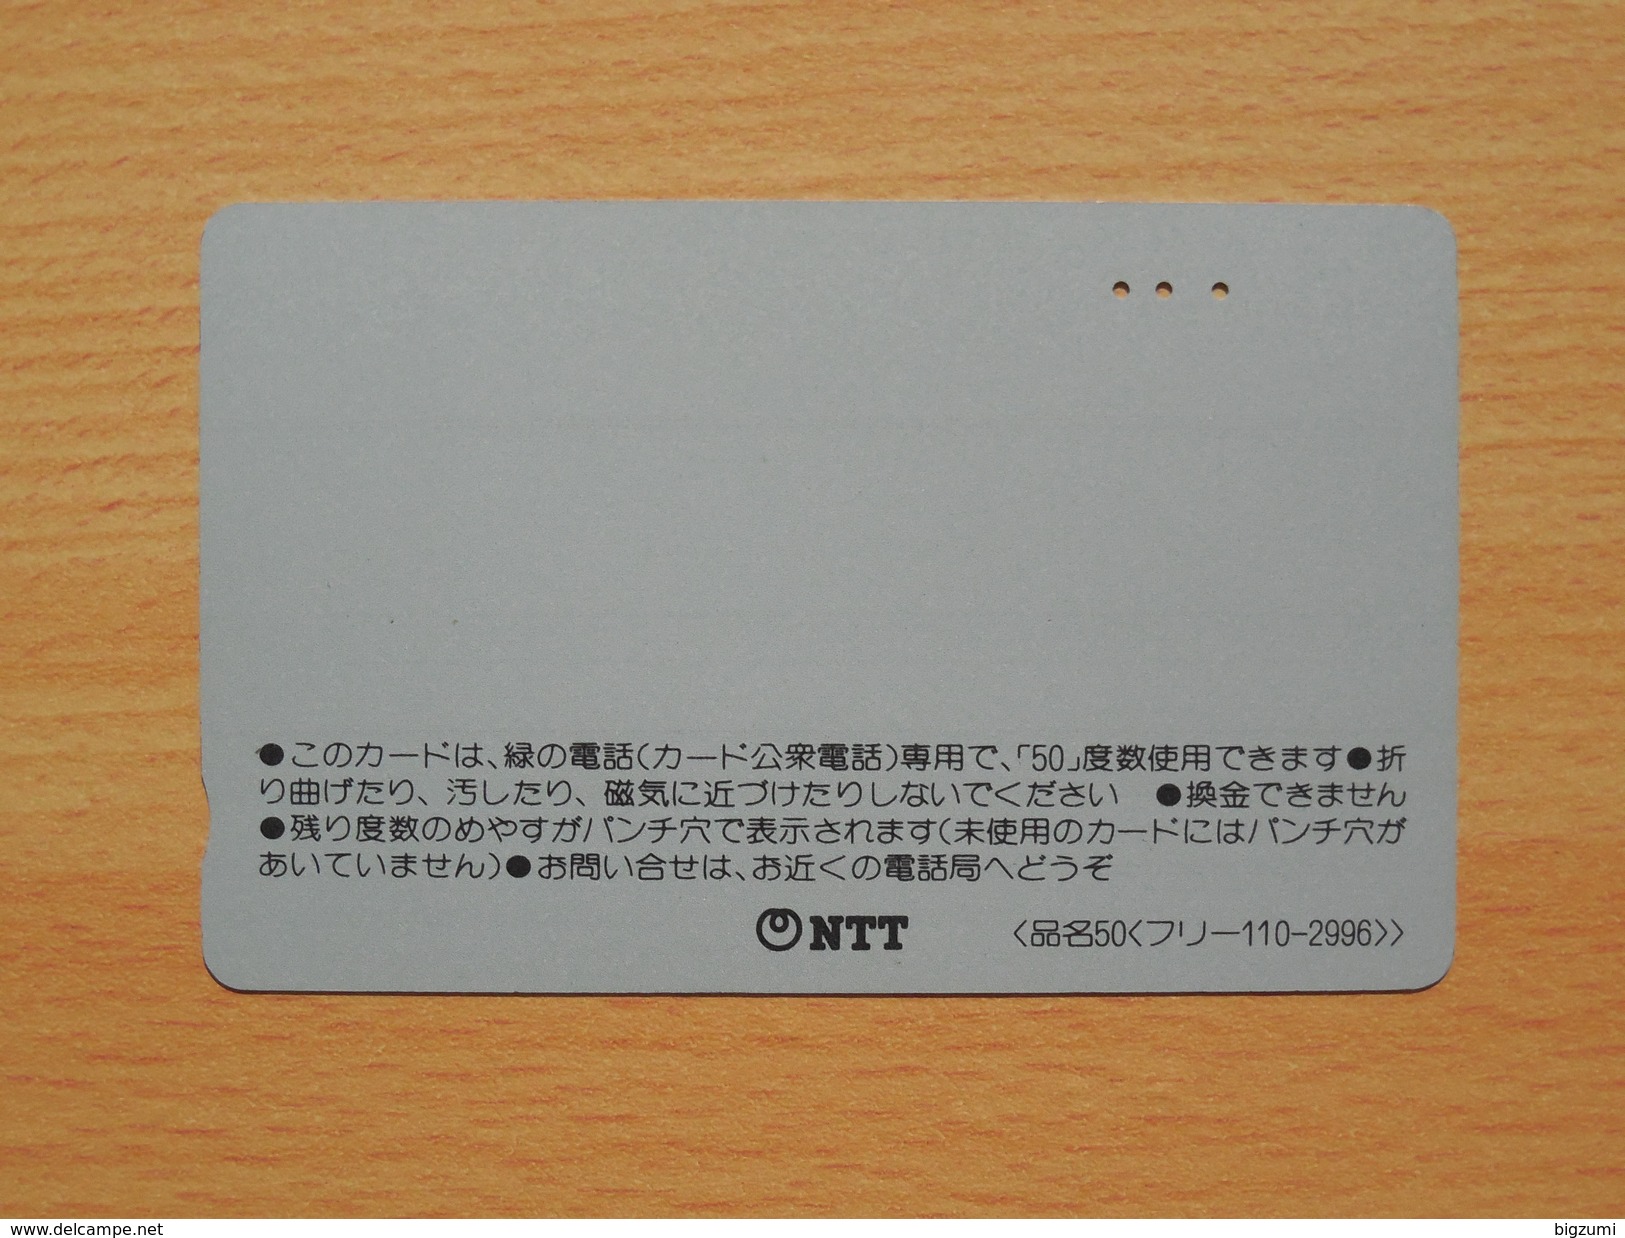 Japon Japan Free Front Bar, Balken Phonecard - 110-2996 / Eulen, Owl, Hibou - Owls